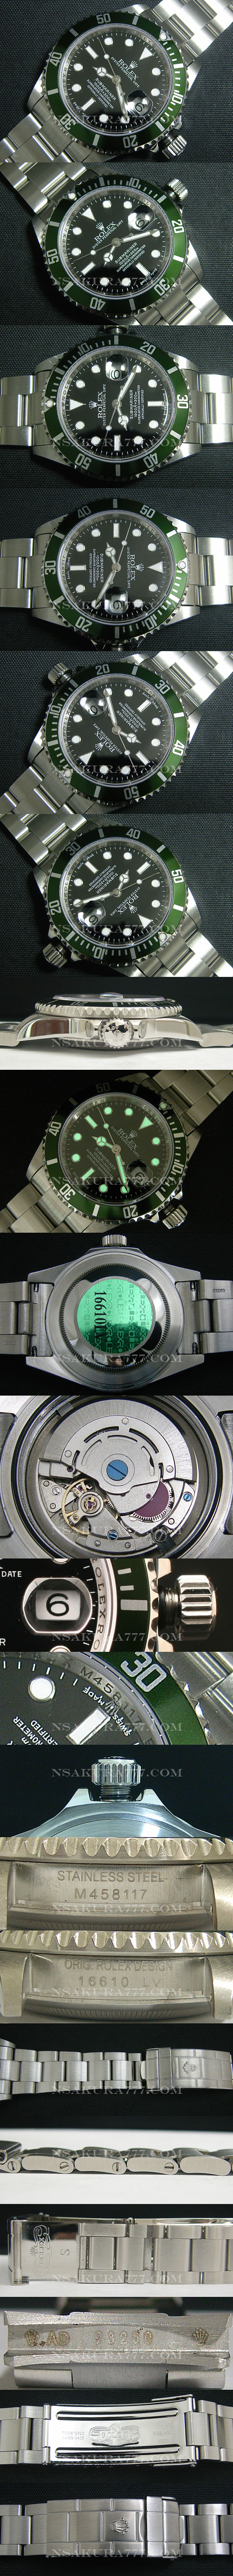 レプリカ時計 ロレックス グリーンサブマリーナ Asian 21600振動 オートマティック(自動巻き) - ウインドウを閉じる